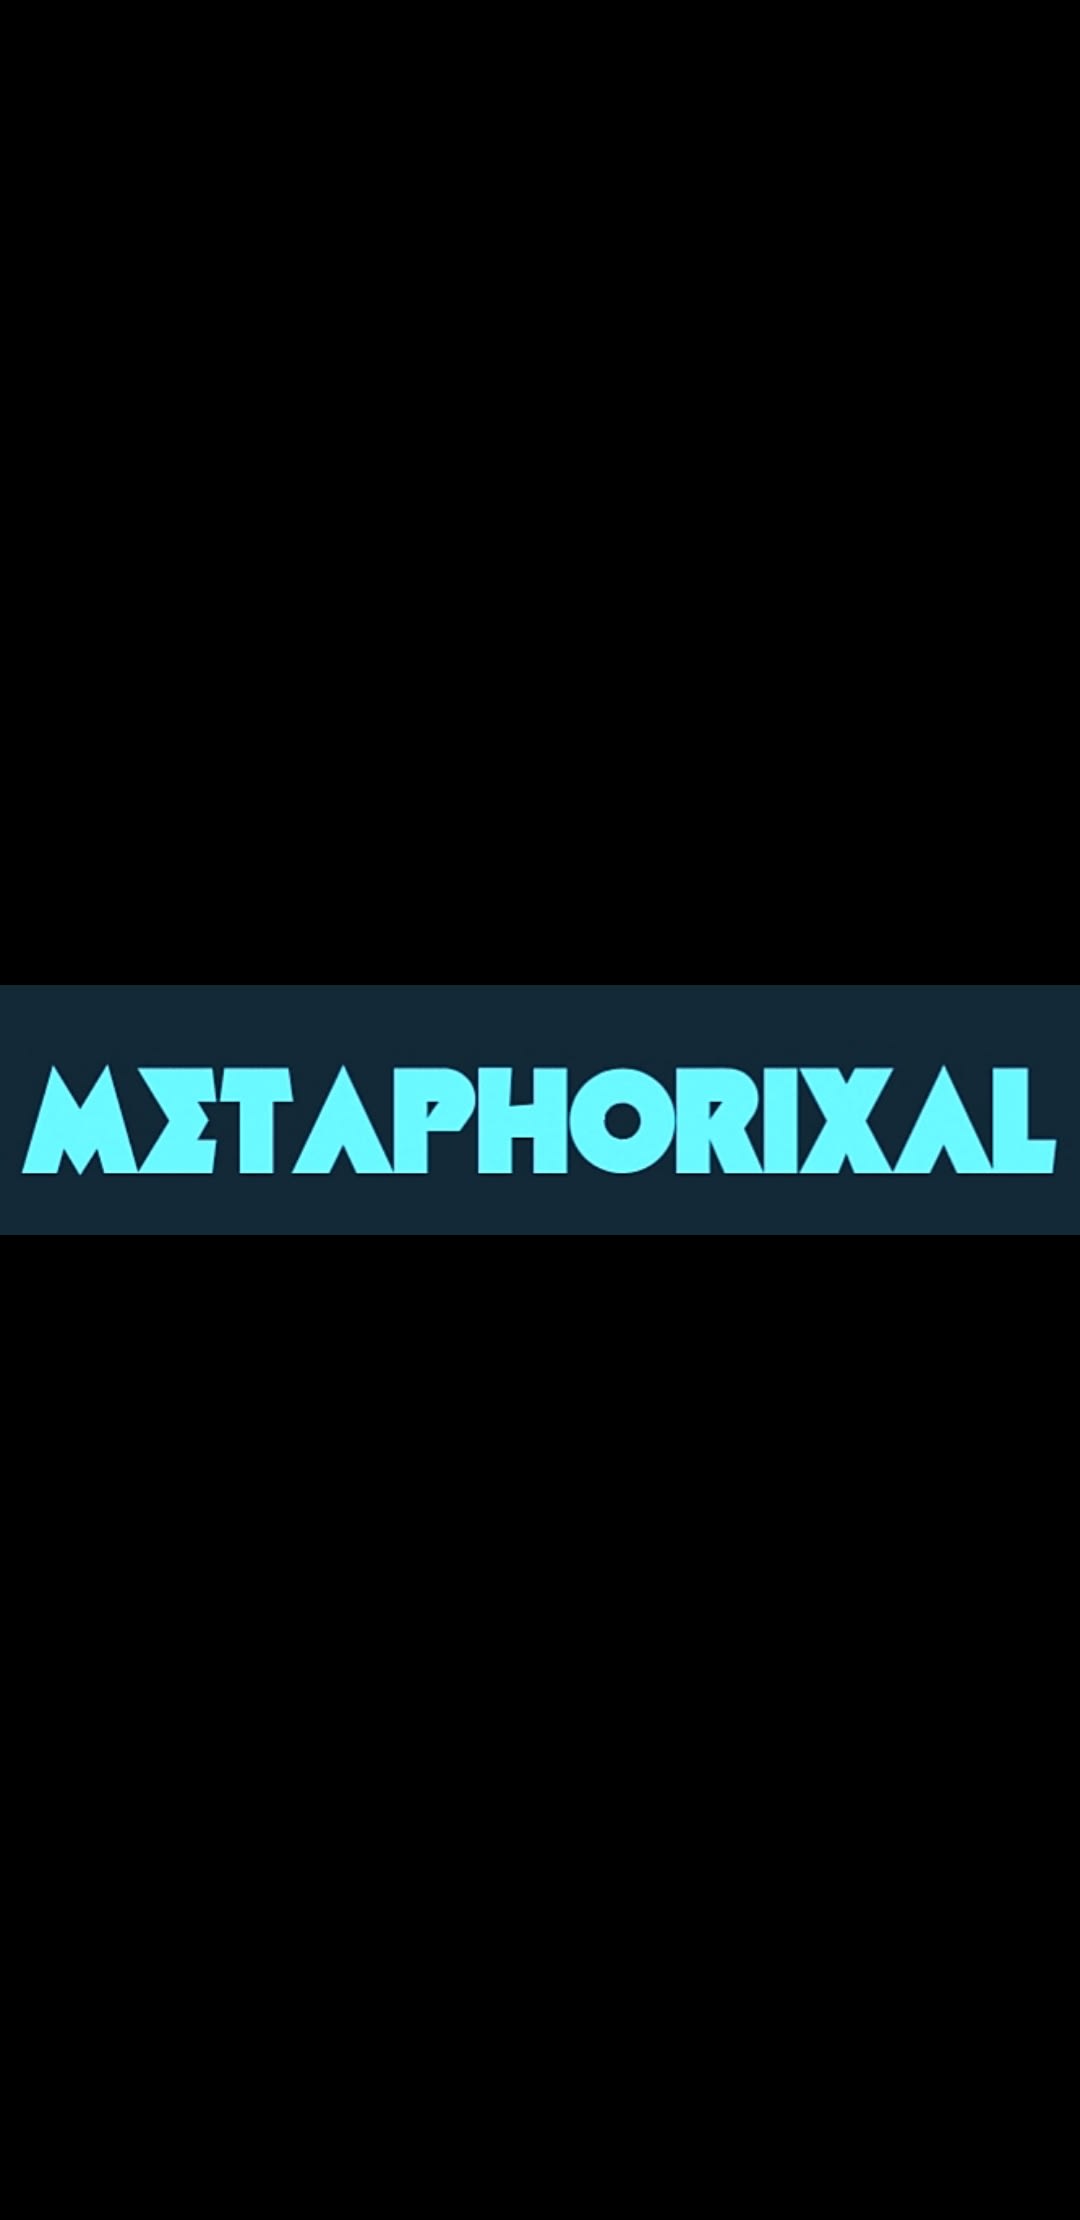 Metaphorixal